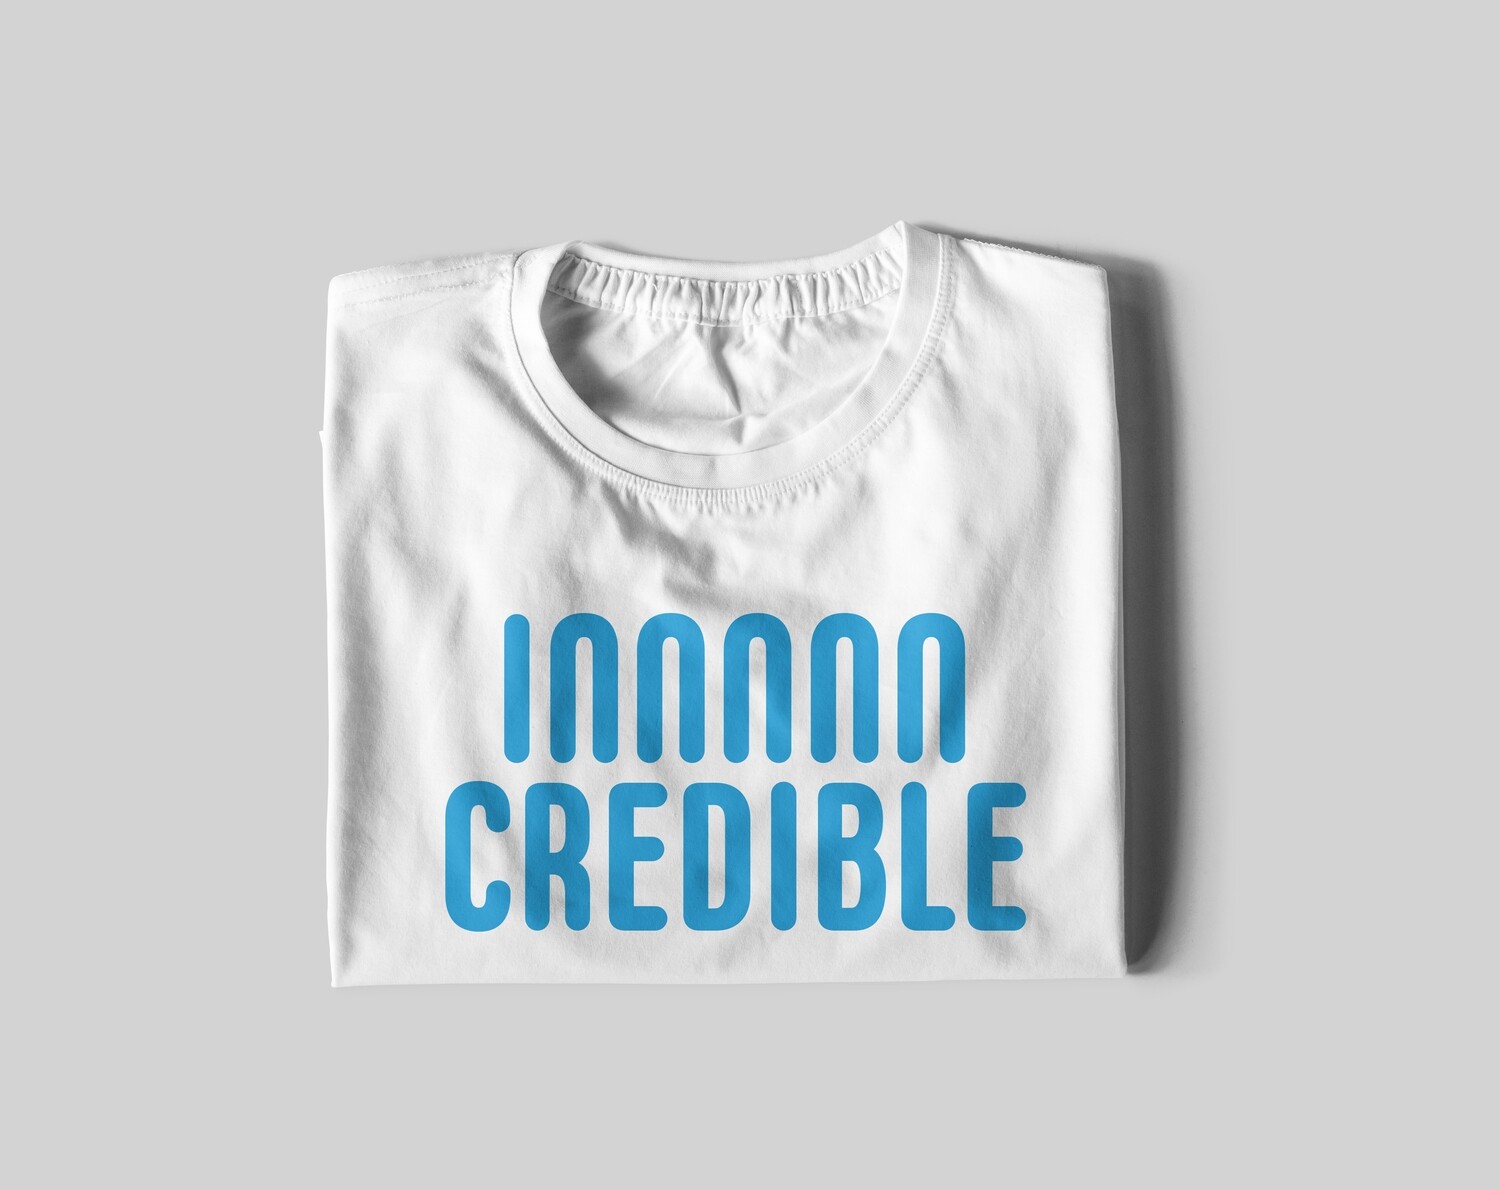 Innnnn Credible t-shirt